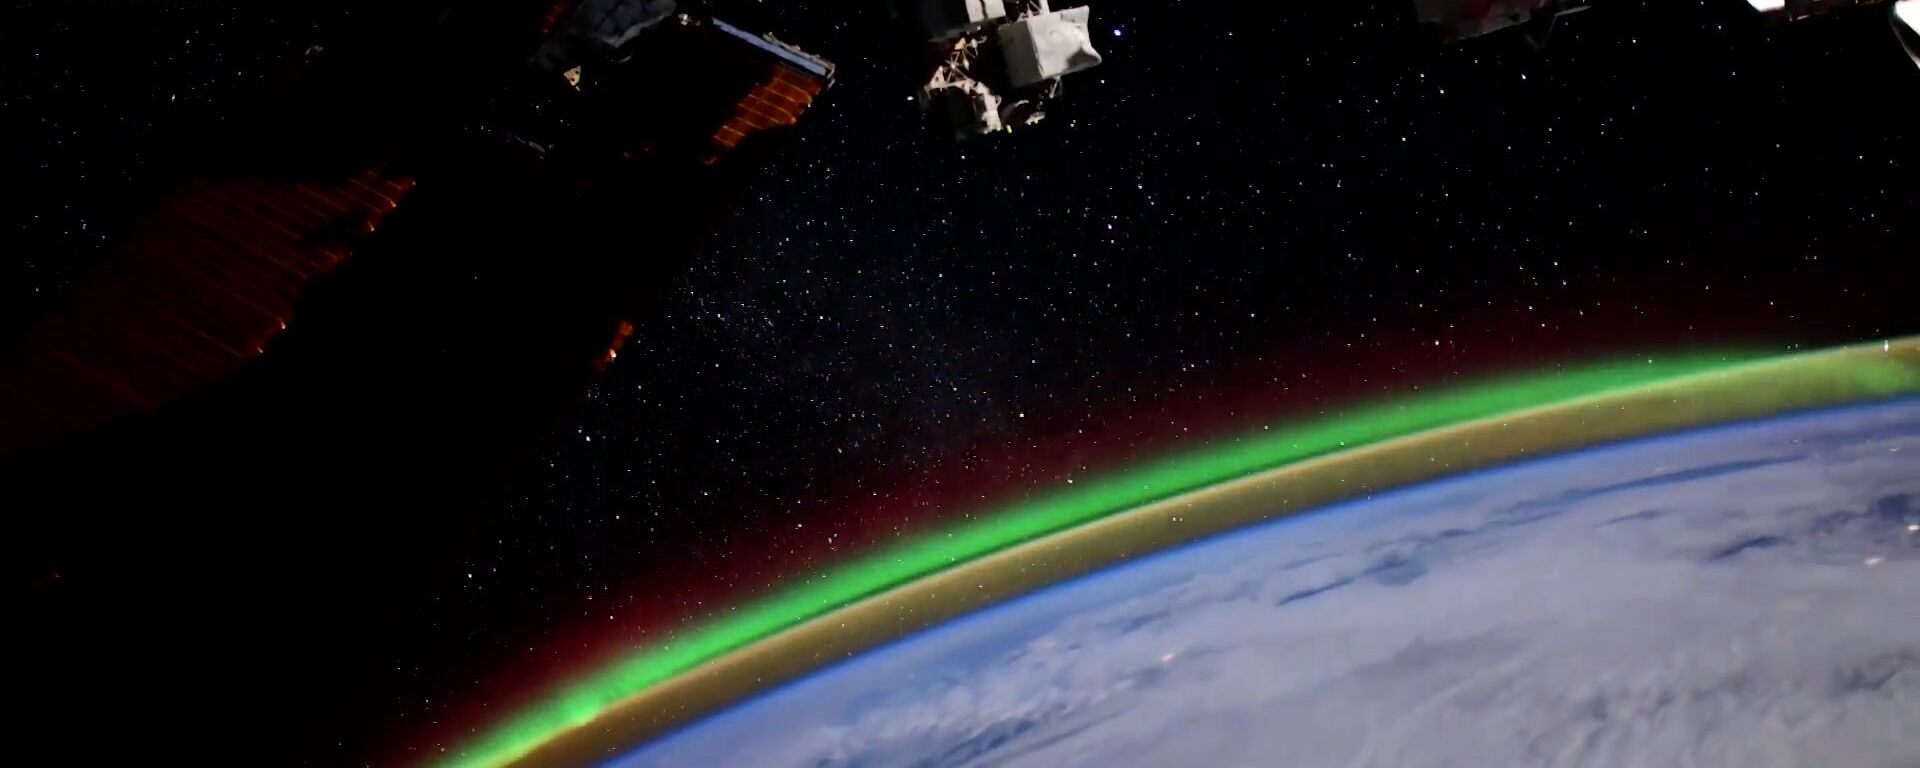 Видеофакт: космонавт запечатлел северное сияние с борта МКС - Sputnik Ўзбекистон, 1920, 16.01.2021